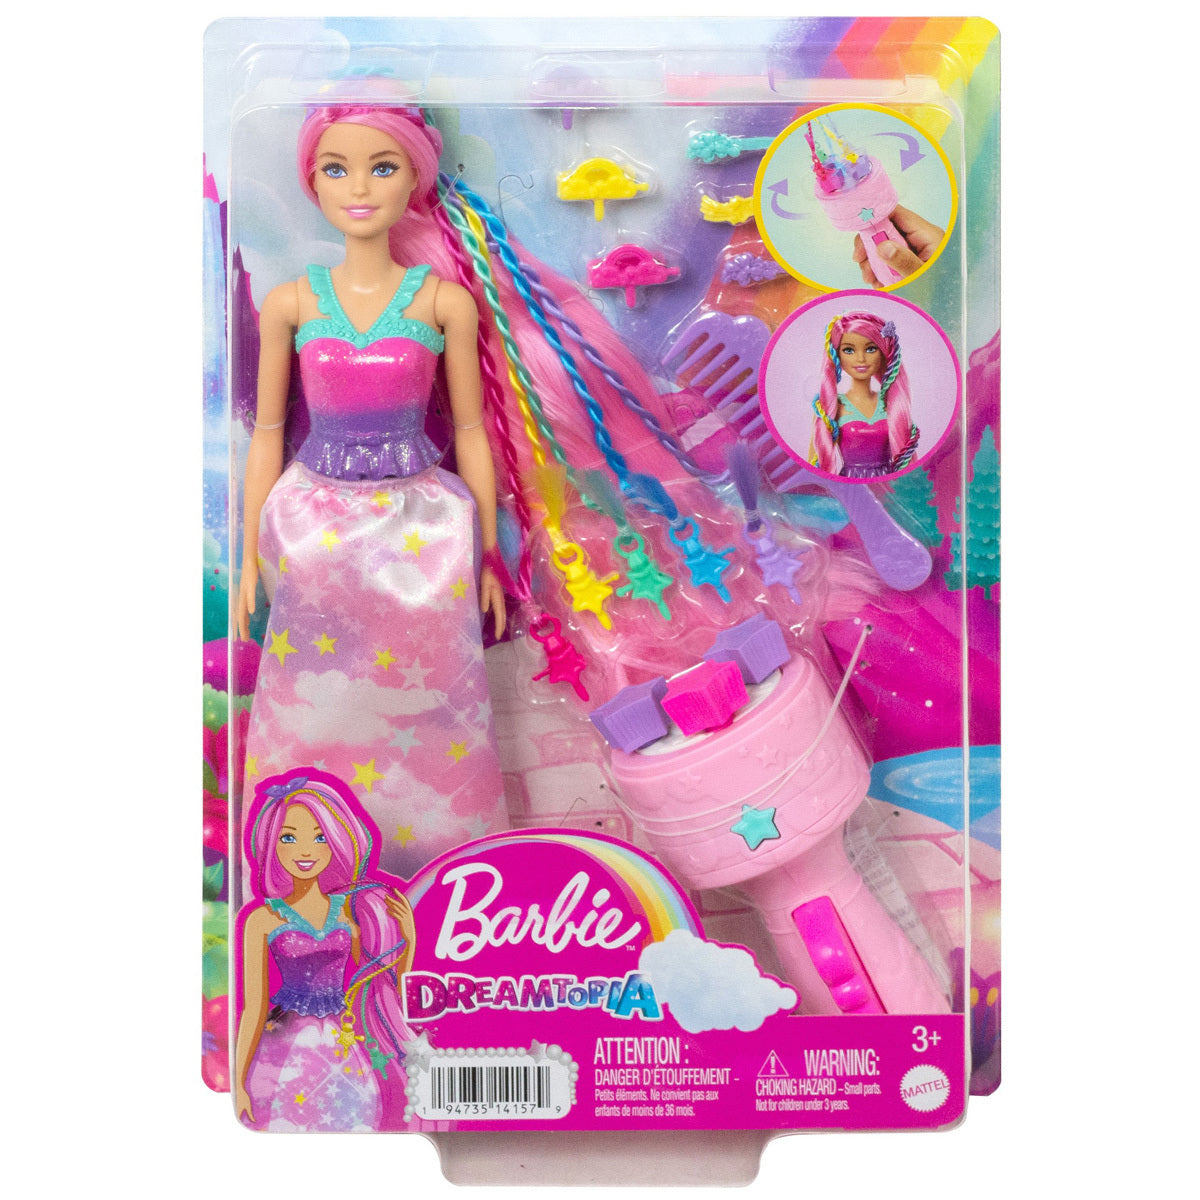 Barbie Dreamtopia Twist ‘n Style Pink Doll